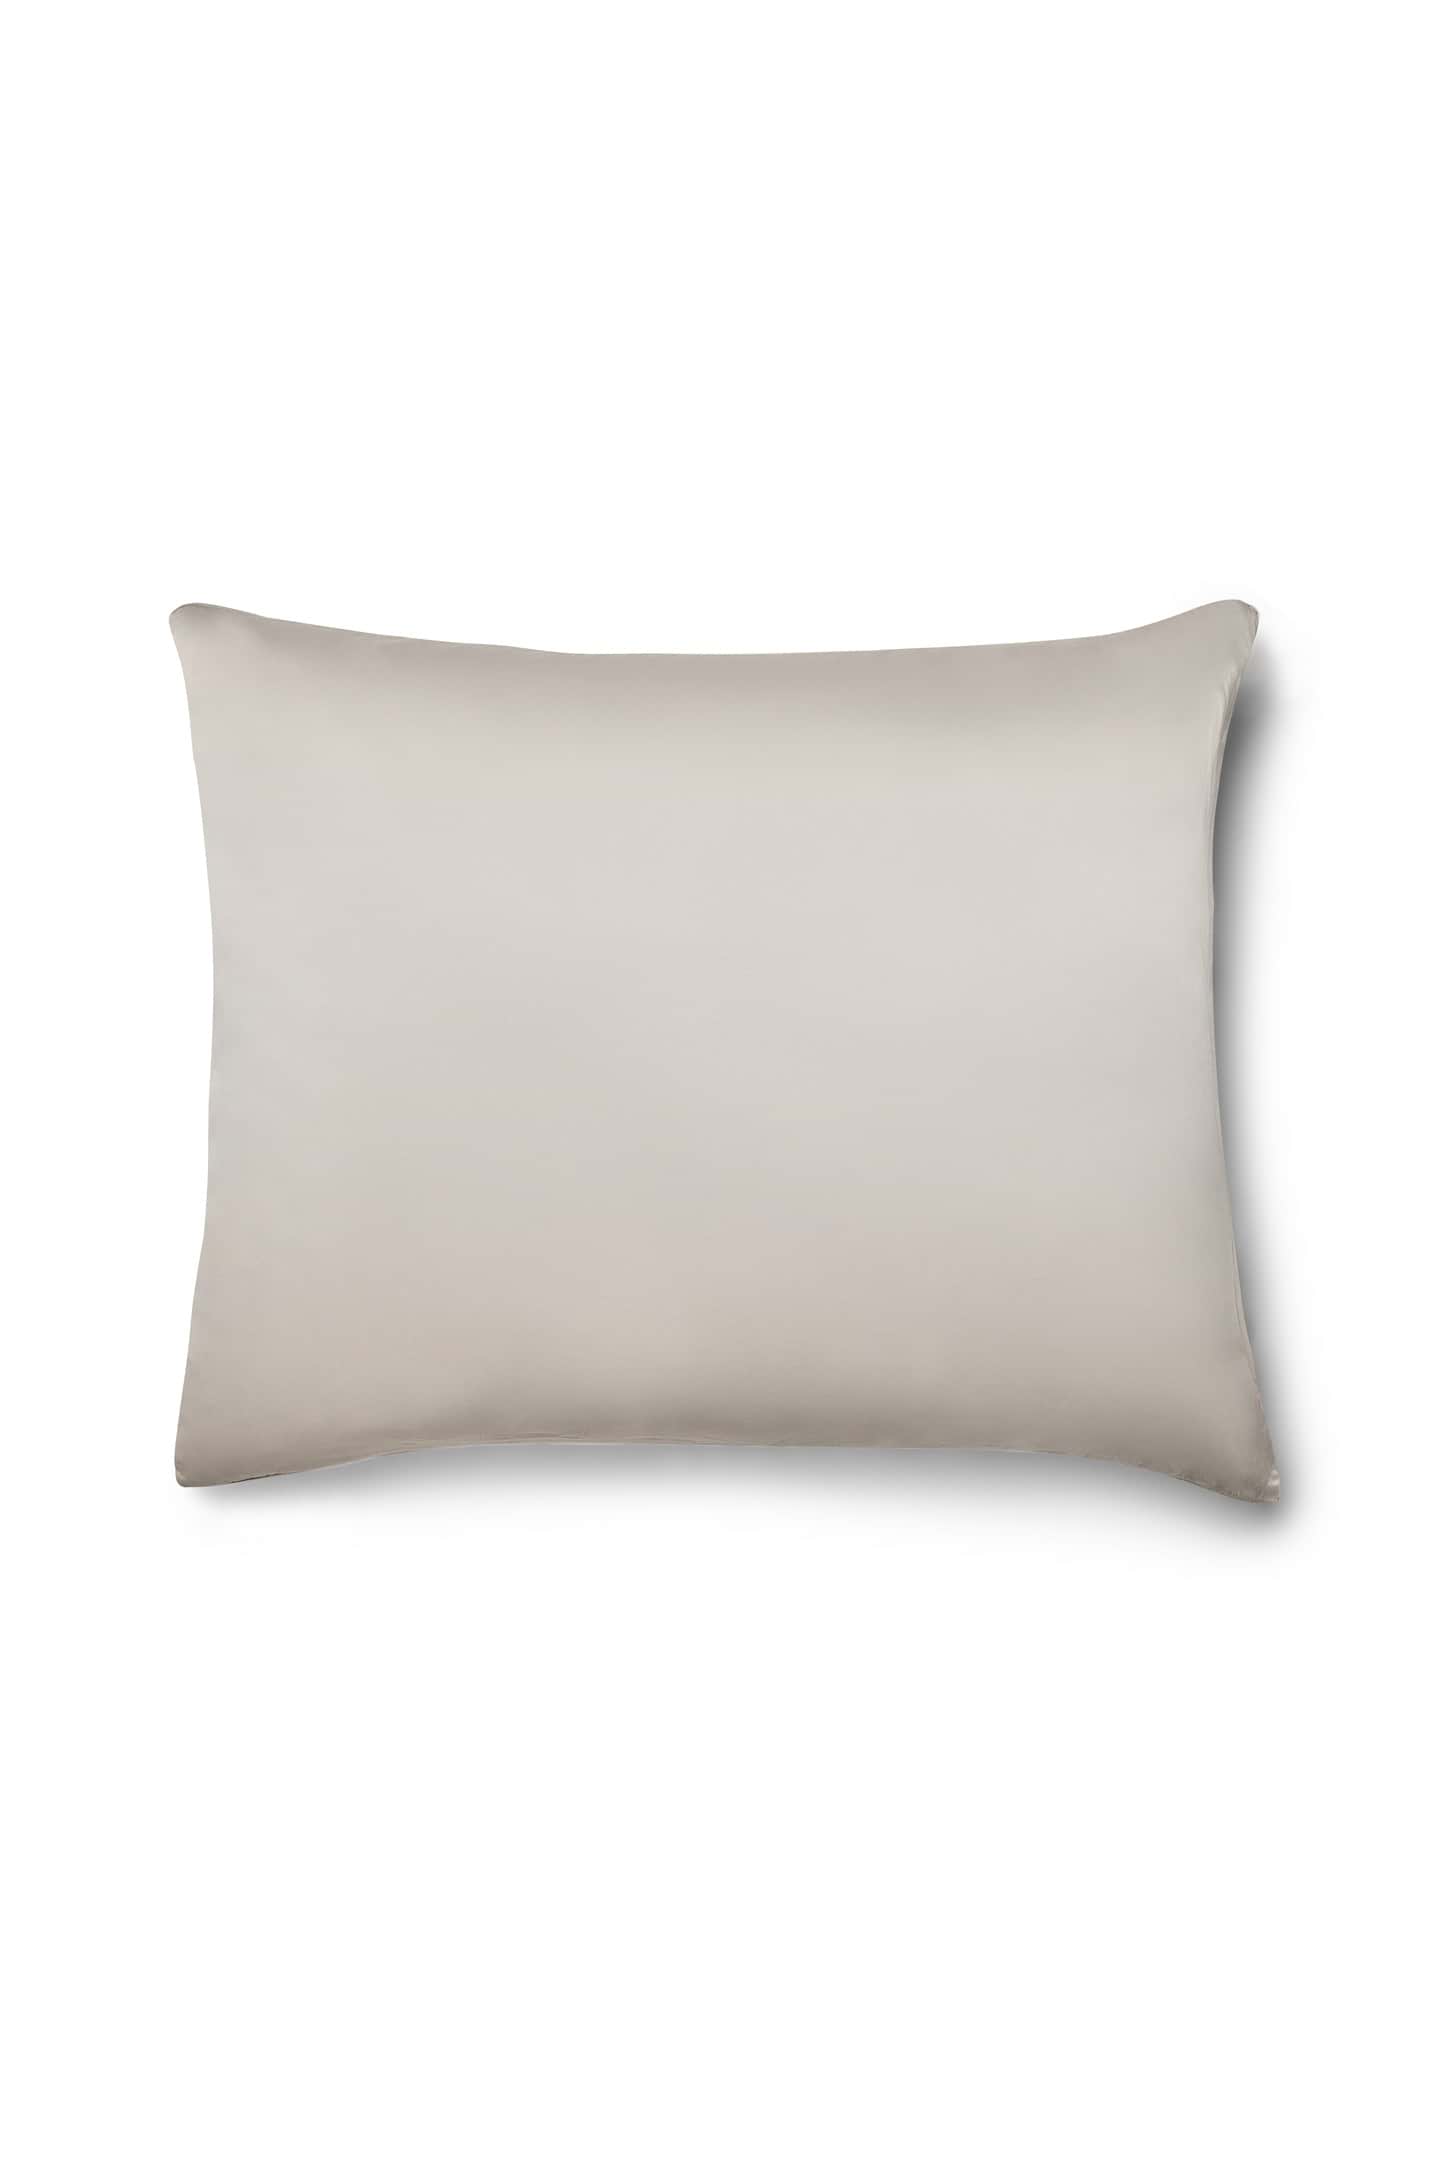 Silk Pillowcase in ecru 50 x 60 cm